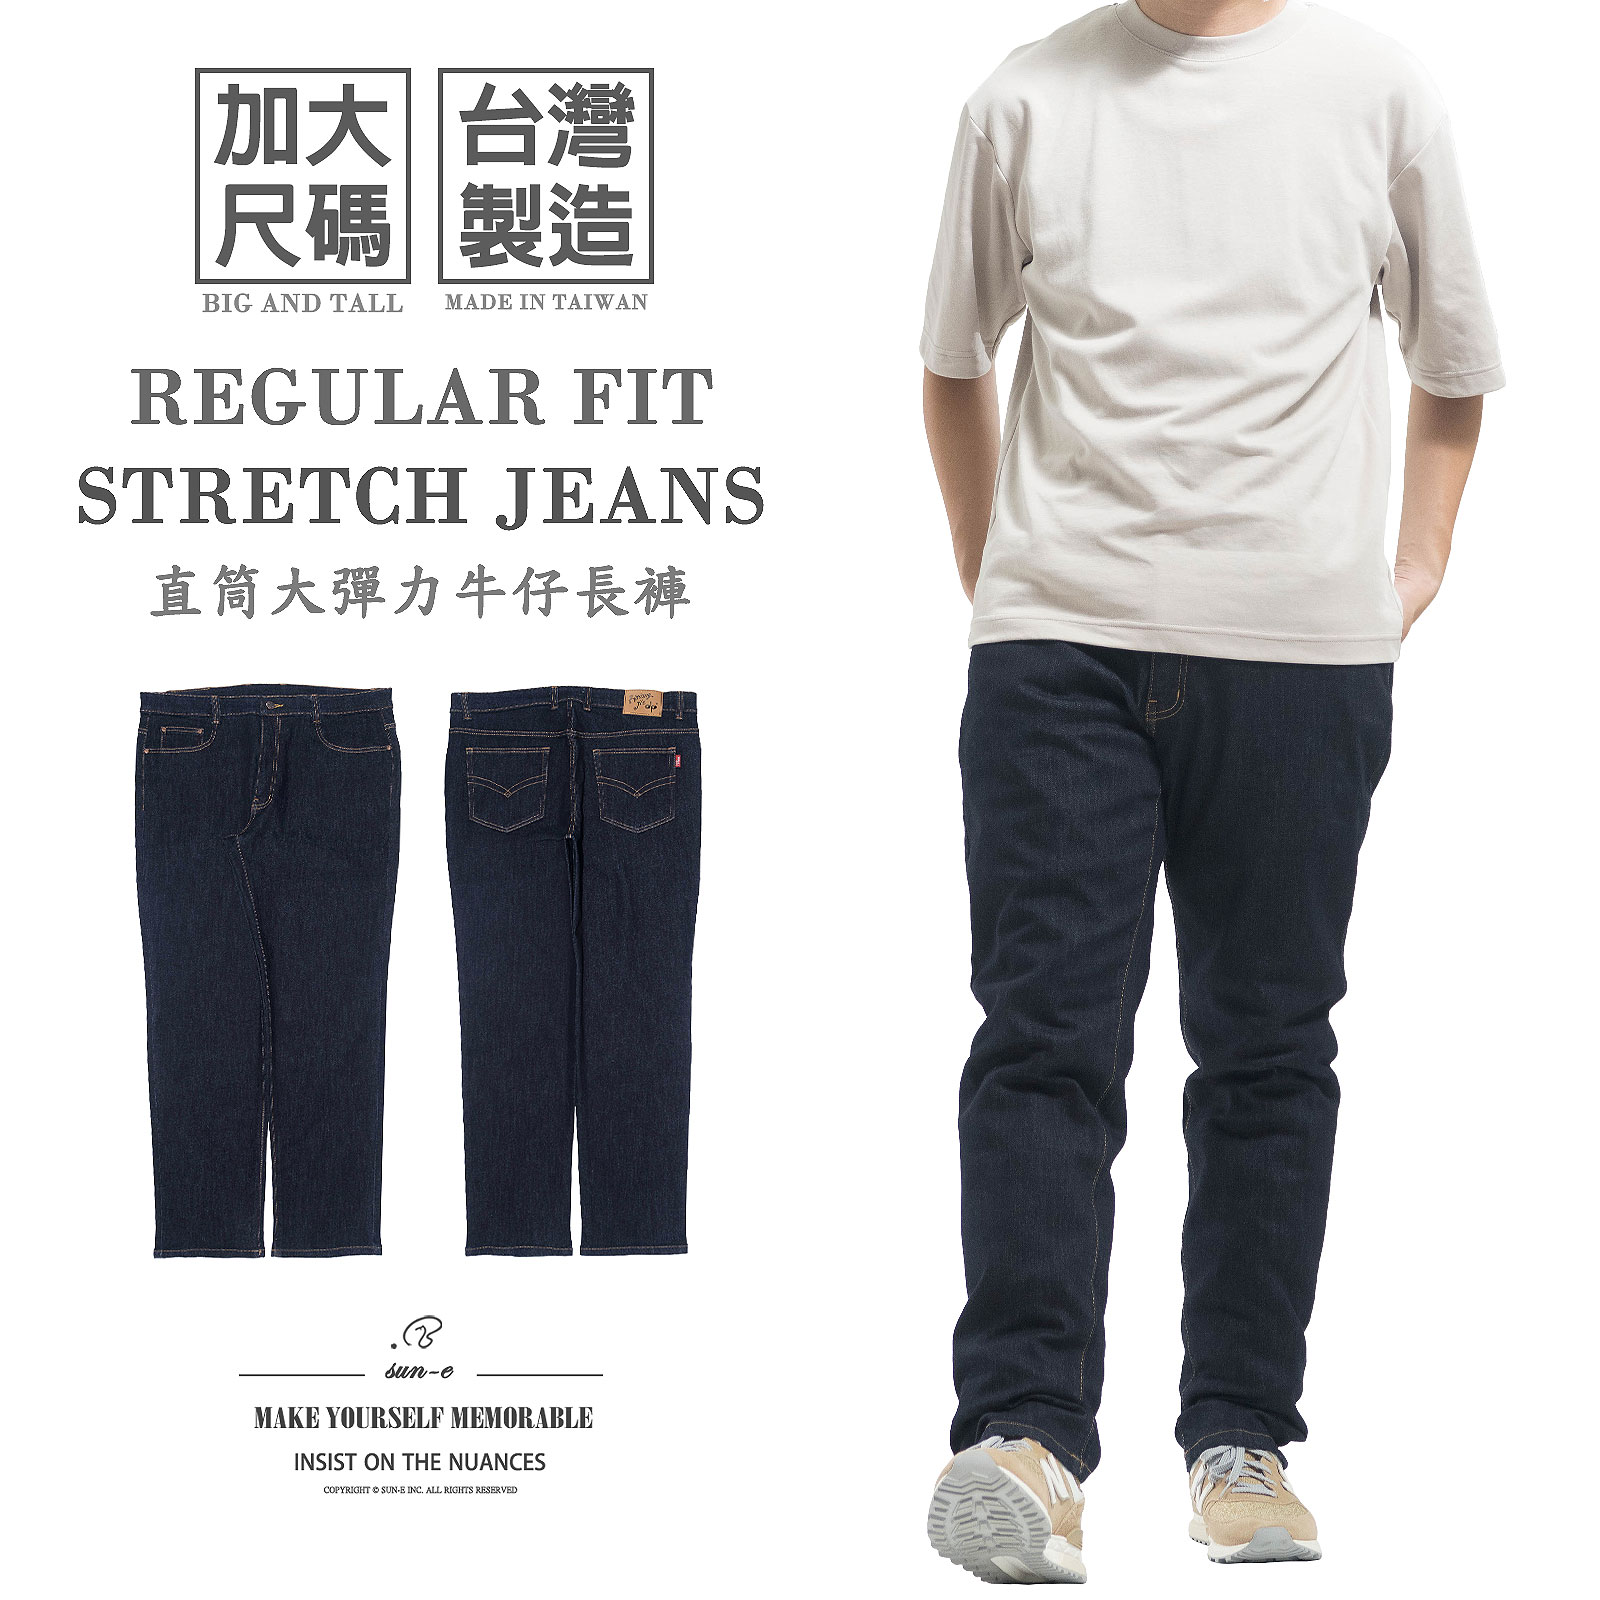 加大尺碼牛仔褲 大彈力台灣製牛仔褲 直筒牛仔長褲 百貨公司等級丹寧長褲 素面牛仔褲 大尺碼長褲 直筒褲 YKK拉鍊 車繡後口袋 Big And Tall Made In Taiwan Jeans Regular Fit Jeans Denim Pants Stretch Jeans Embroidered Pockets (345-5940-31)深牛仔 腰圍:38~46英吋 (97~117公分) 男 [實體店面保障] sun-e